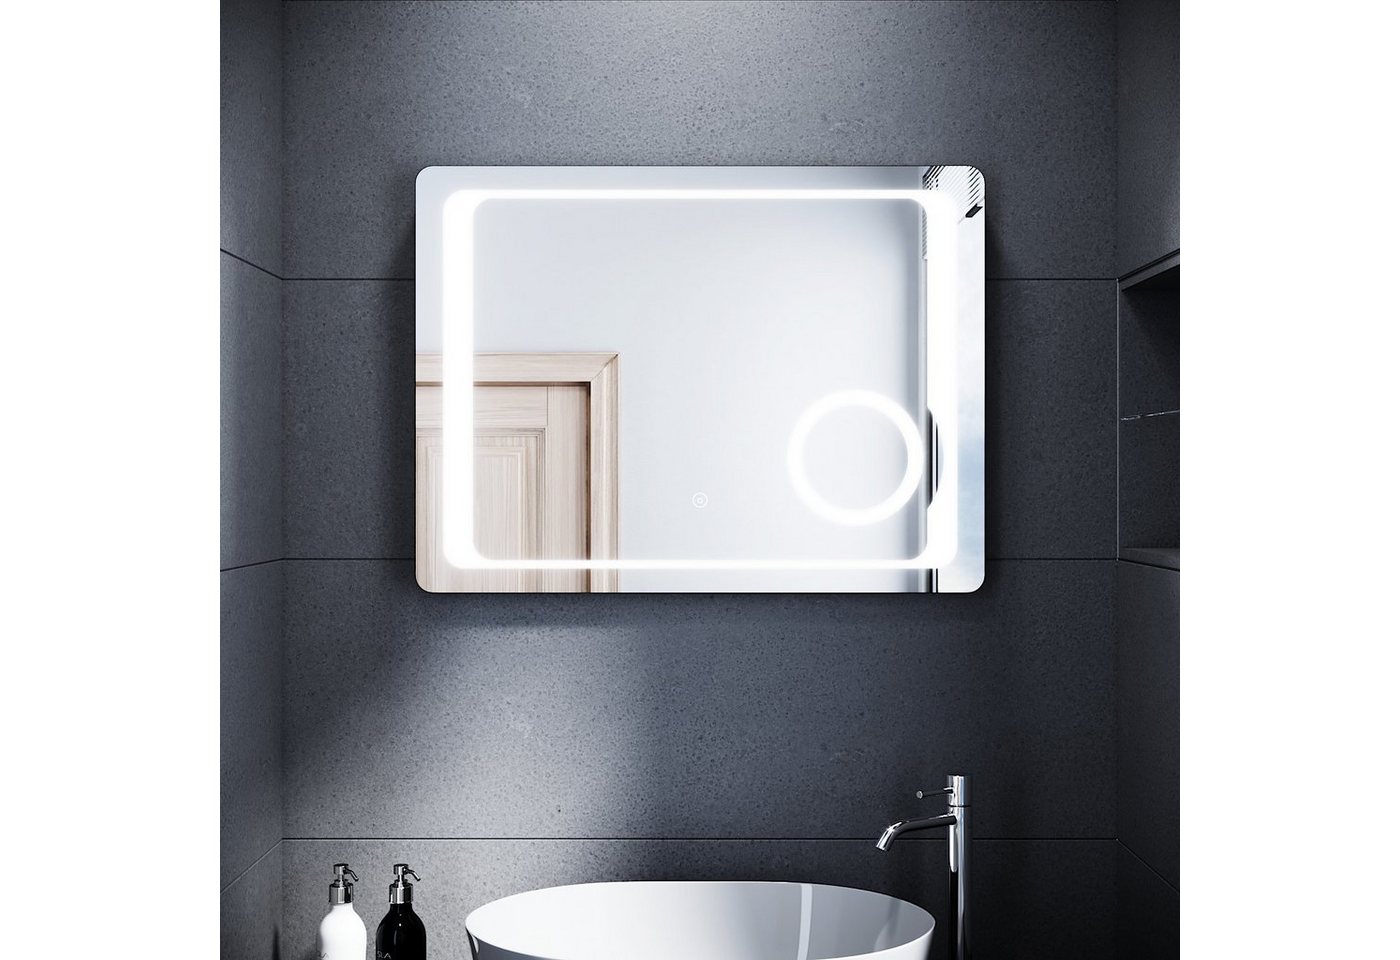 SONNI Badspiegel LED Badspiegel Beschlagfrei Badezimmer Lichtspiegel 80 x 60 cm Spiegel, Kometikspiegel mit Beleuchtung Touchschalter mit Rasierersteckdose Bad von SONNI